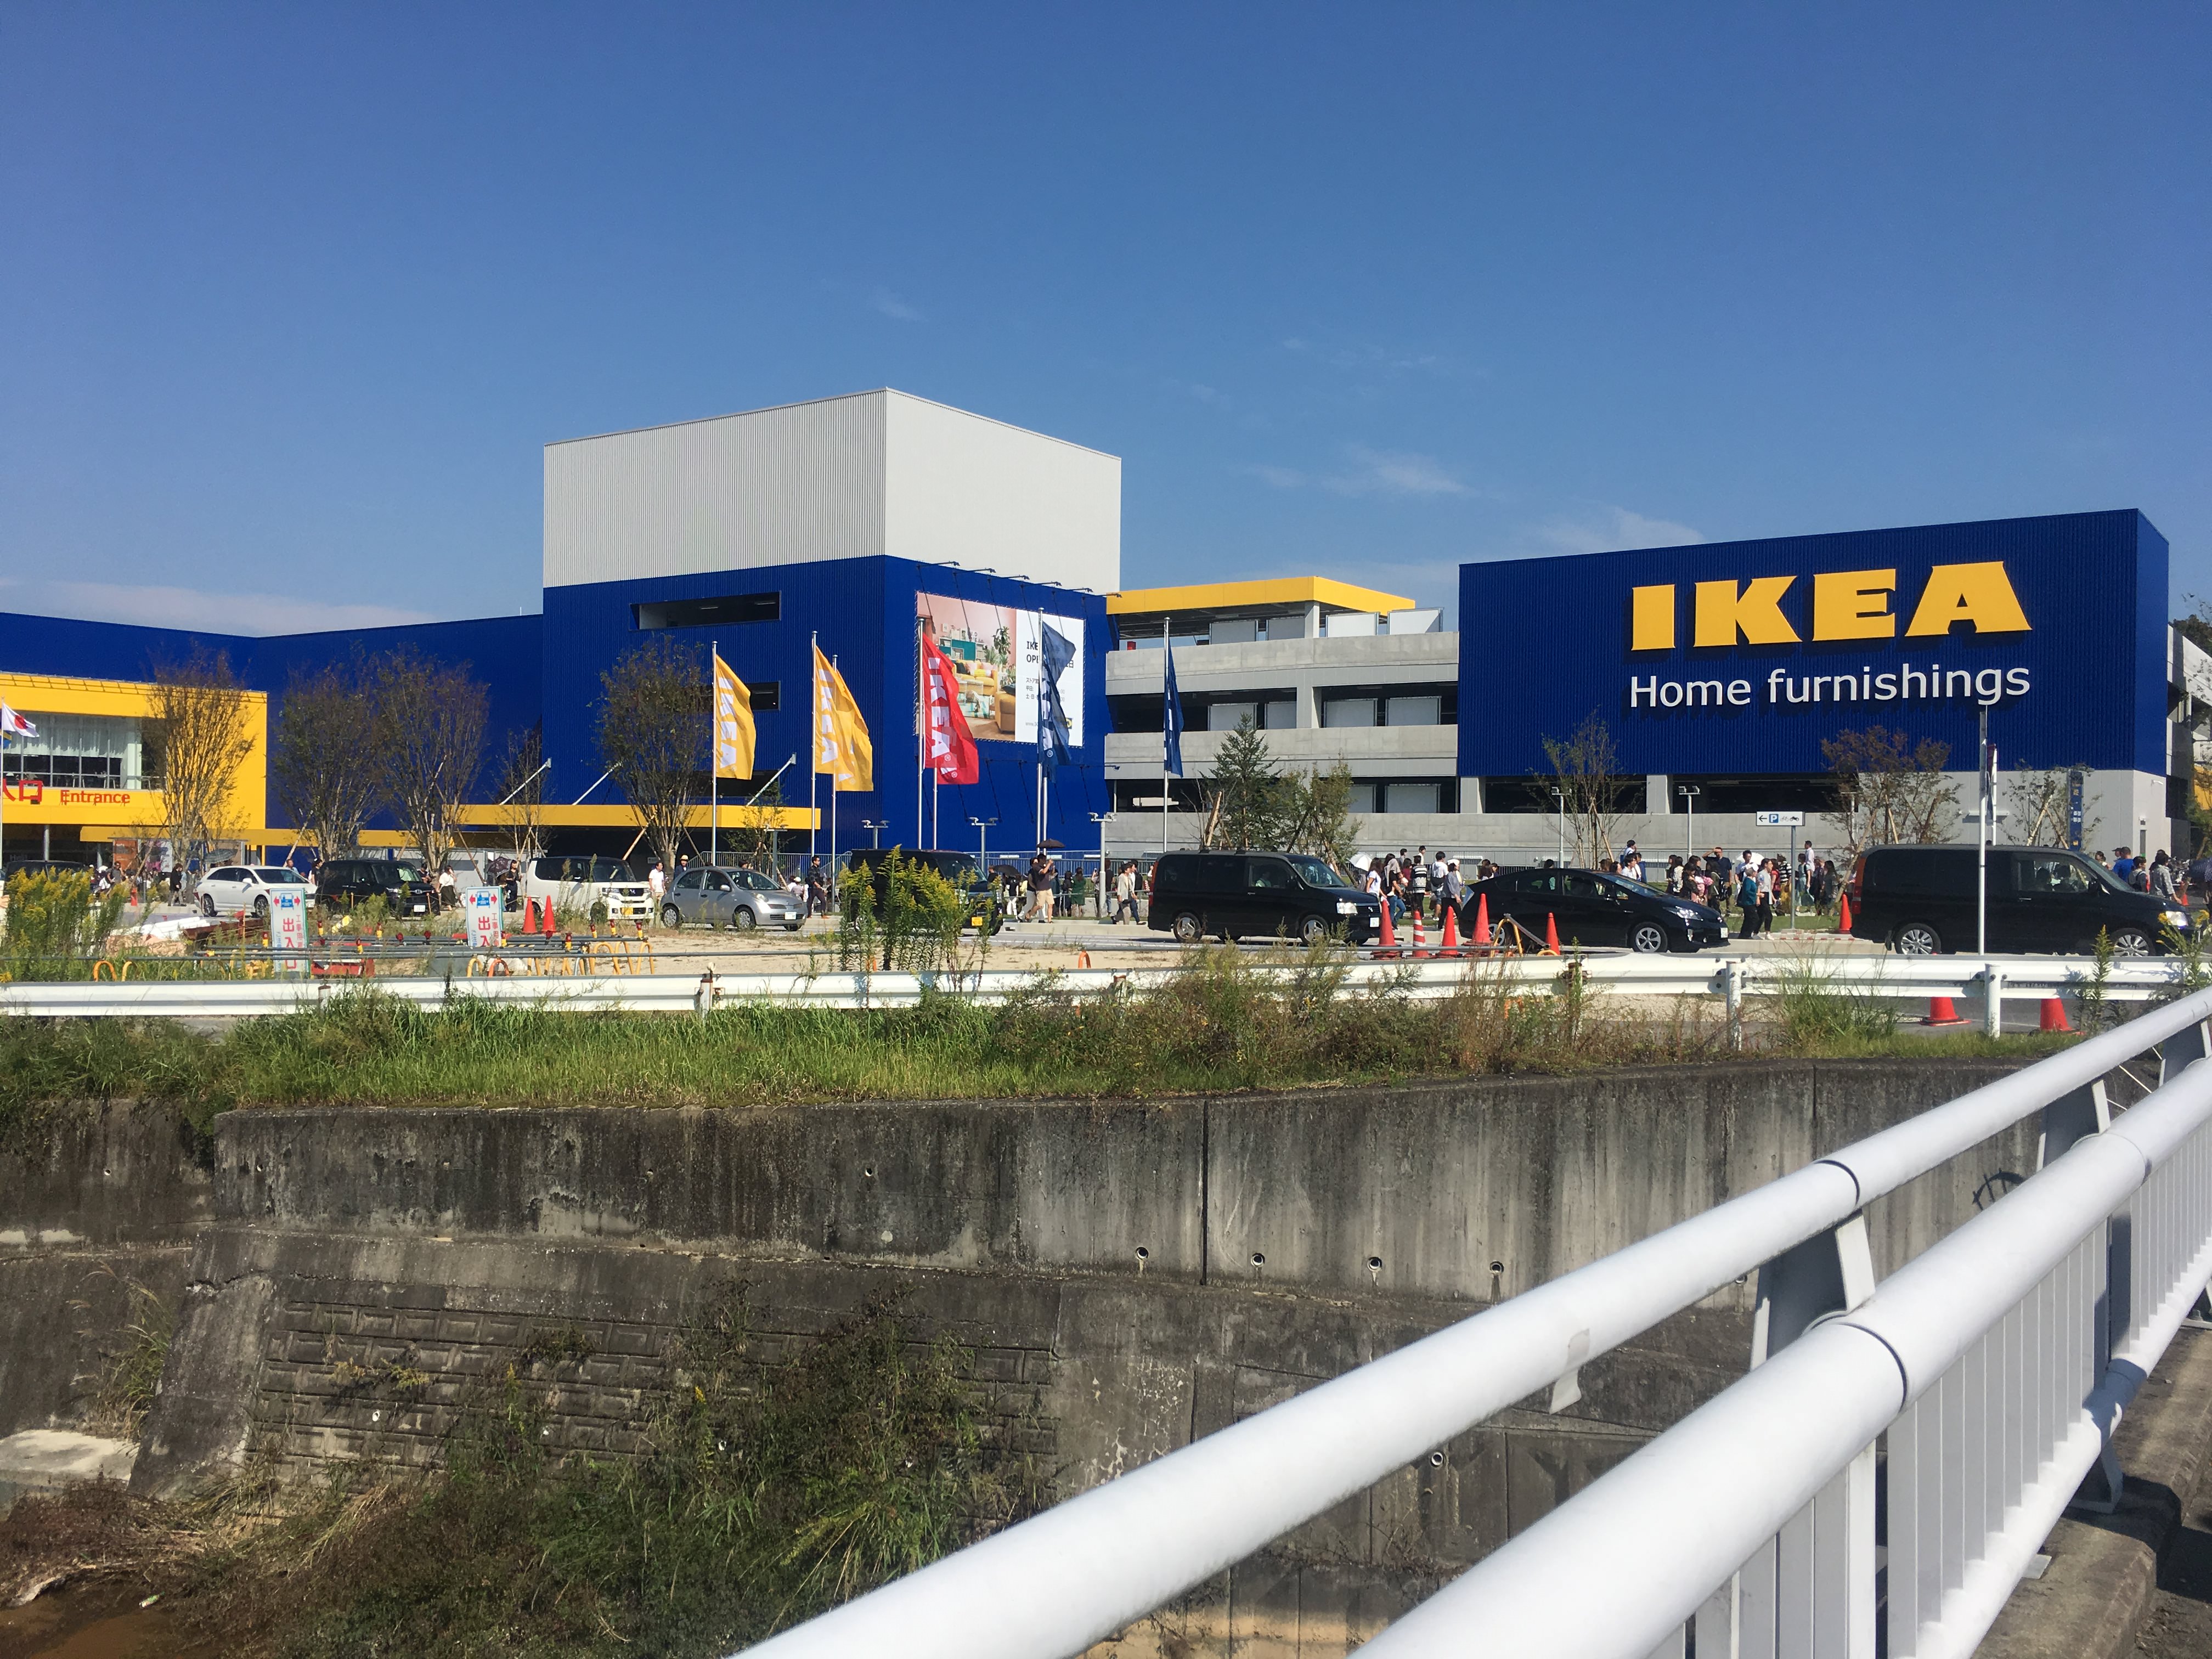 レポ Ikea長久手店オープン 混雑状況 駐車場 待ち時間は 自由に生きる 頭の使い方 ホラノコウスケ公式ブログ